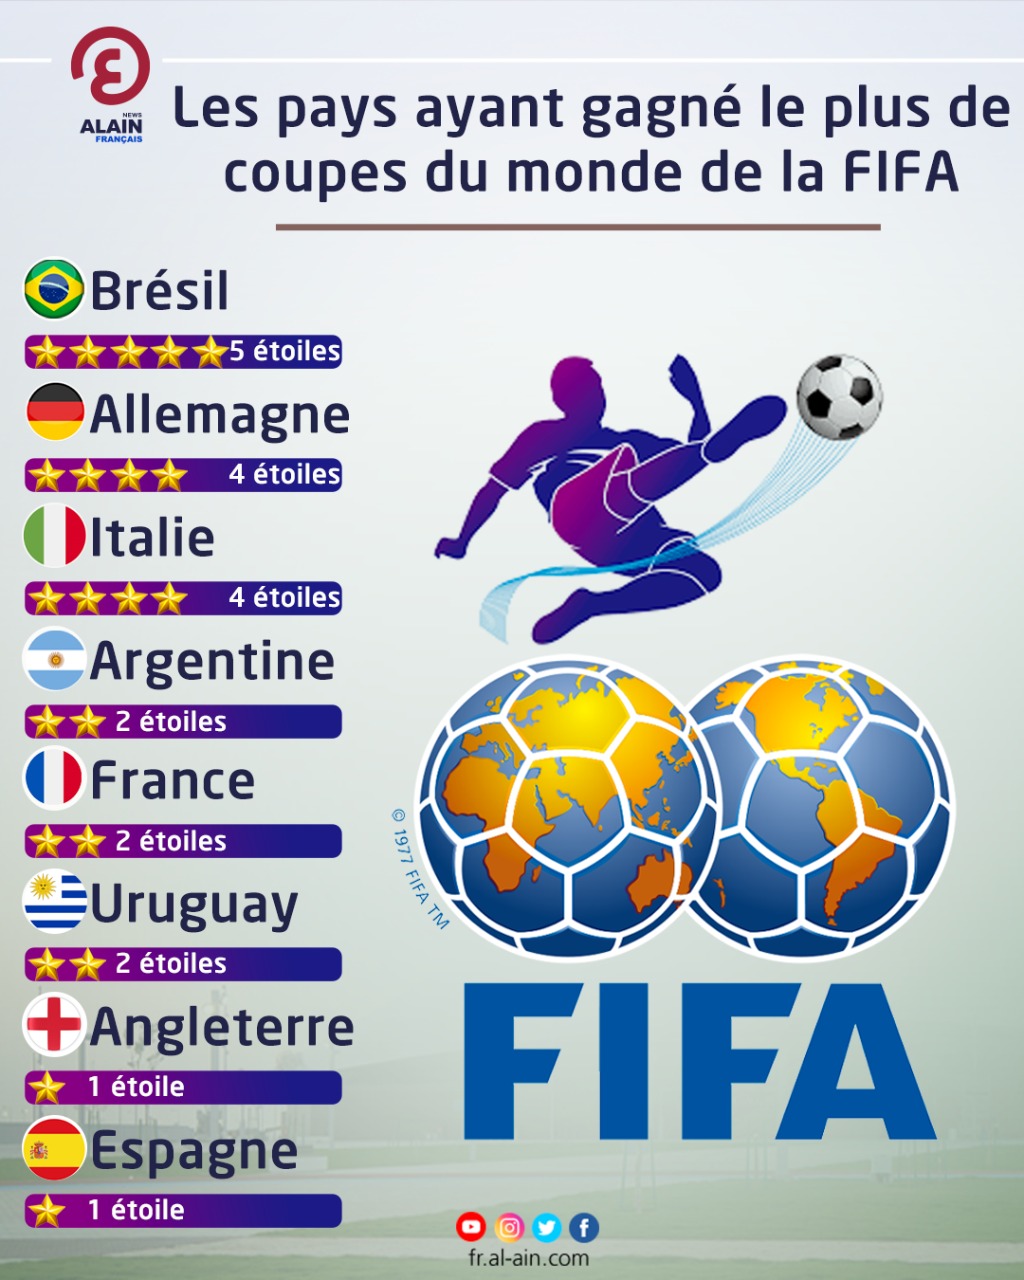 Les pays ayant gagné le plus de coupes du monde de la FIFA